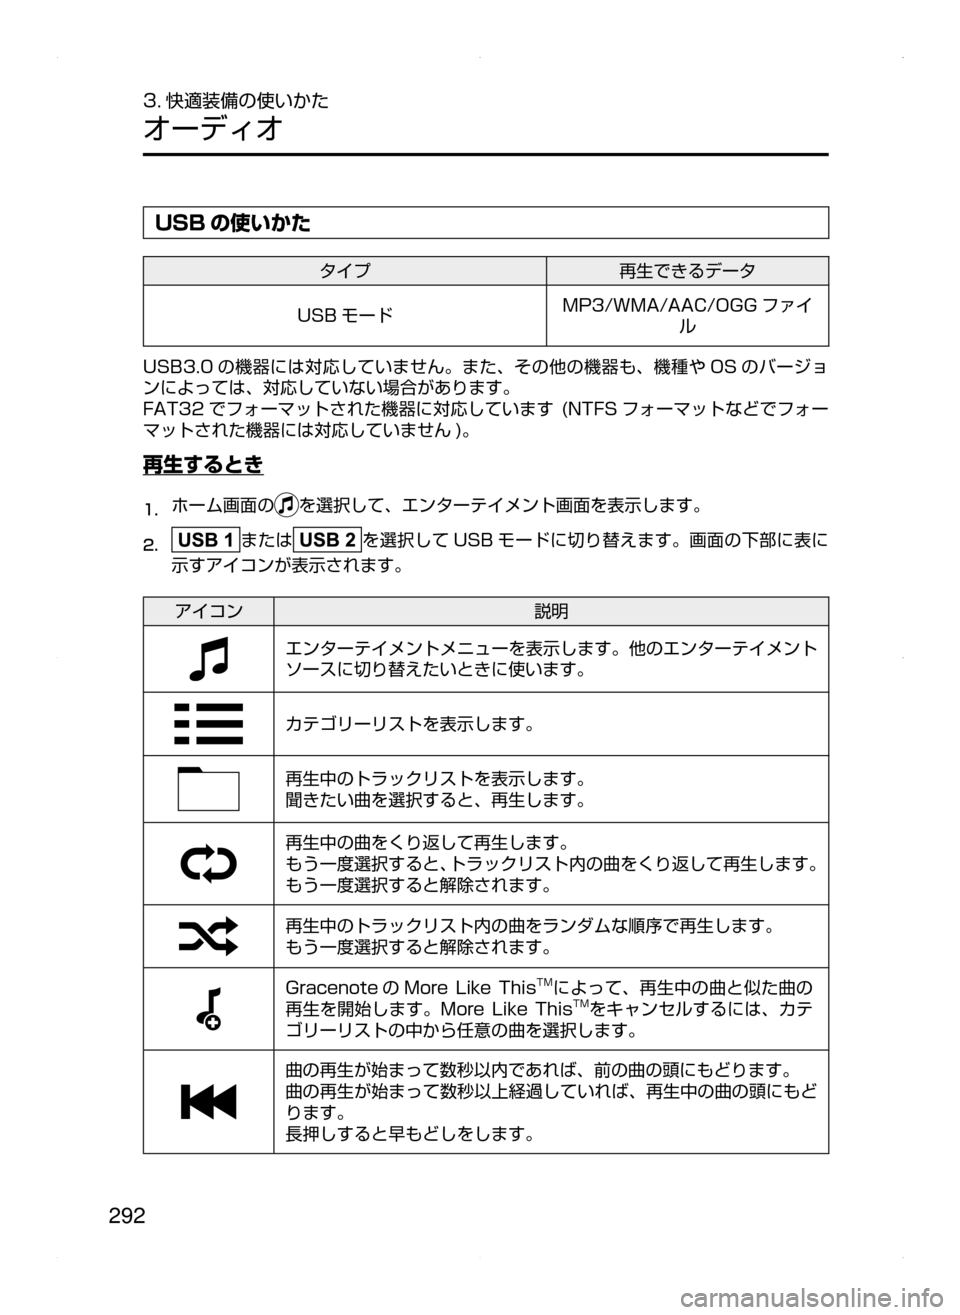 MAZDA MODEL AXELA HYBRID 2015  アクセラハイブリッド｜取扱説明書 (in Japanese)  292
3. 快適装備の使いかた
オーディオ
USB の使いかた
タイプ再生できるデータ
USB モード MP3/WMA/AAC/OGG ファイ
ル
USB3.0 の機器には対応していません。�